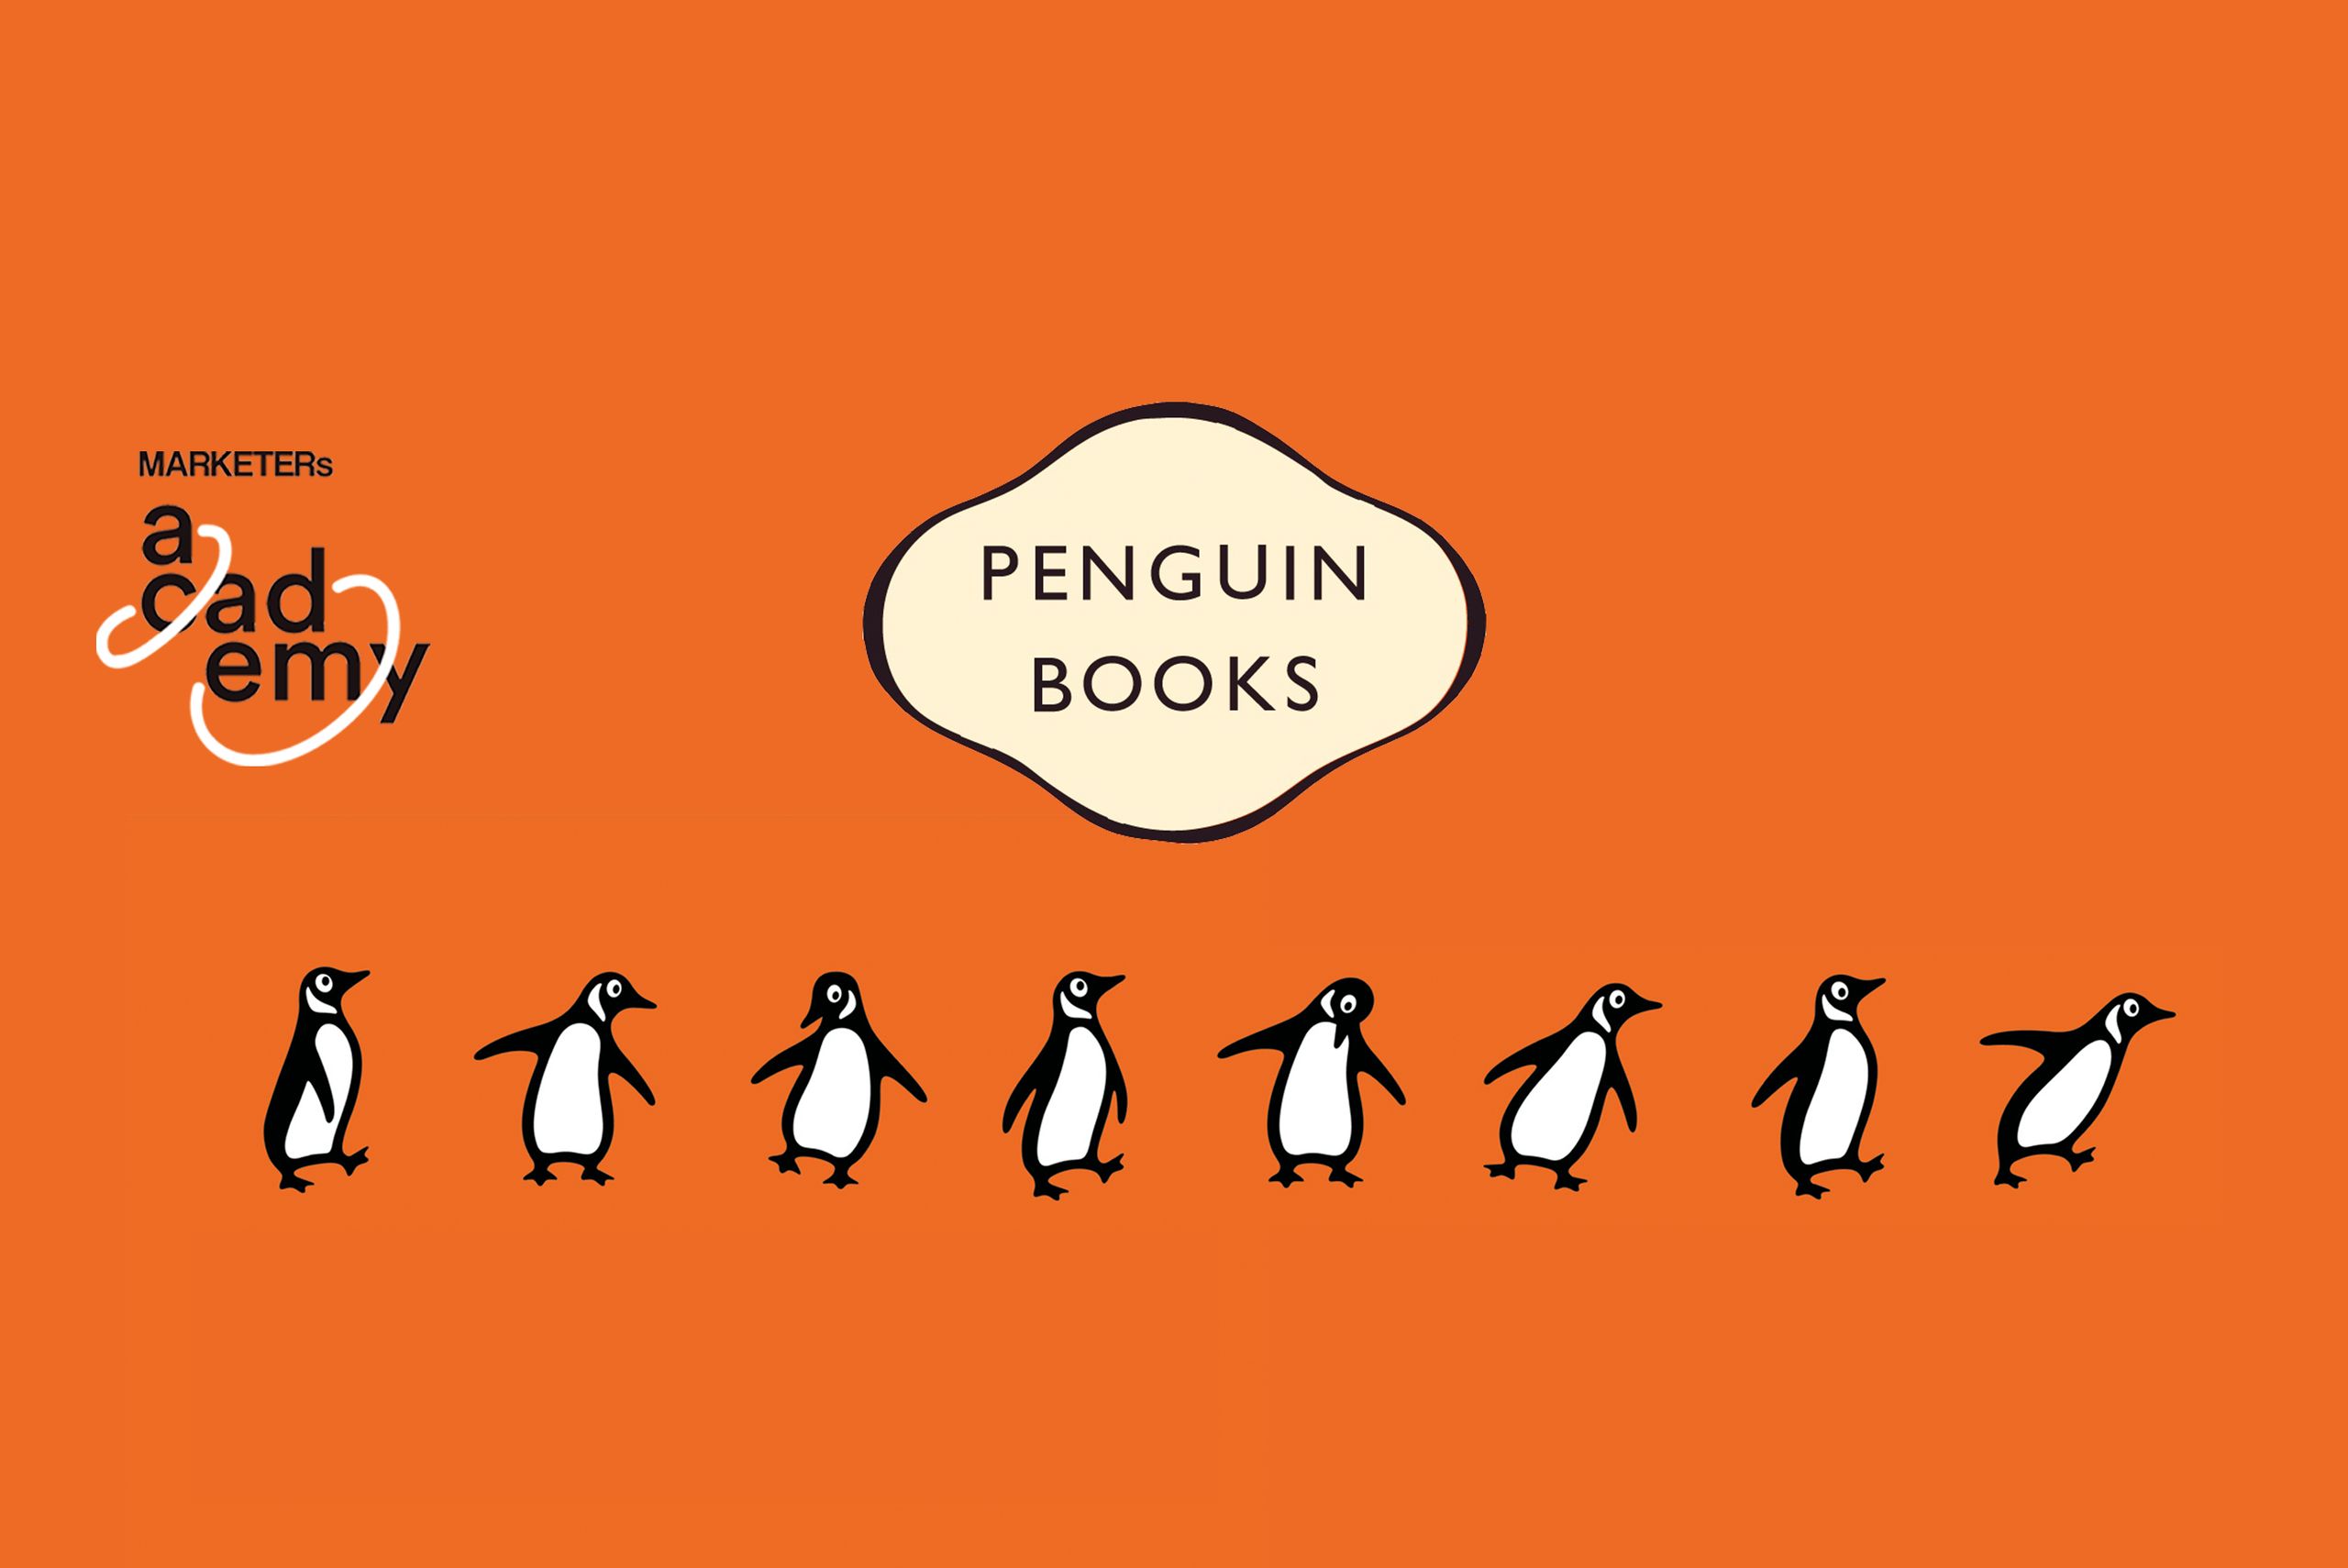 Il caso delle copertine Penguin Books: fonte: marketersclub.it
Nella creazione di una strategia pubblicitaria, molto spesso l’impaginazione e il lavoro grafico passano in secondo piano, so…